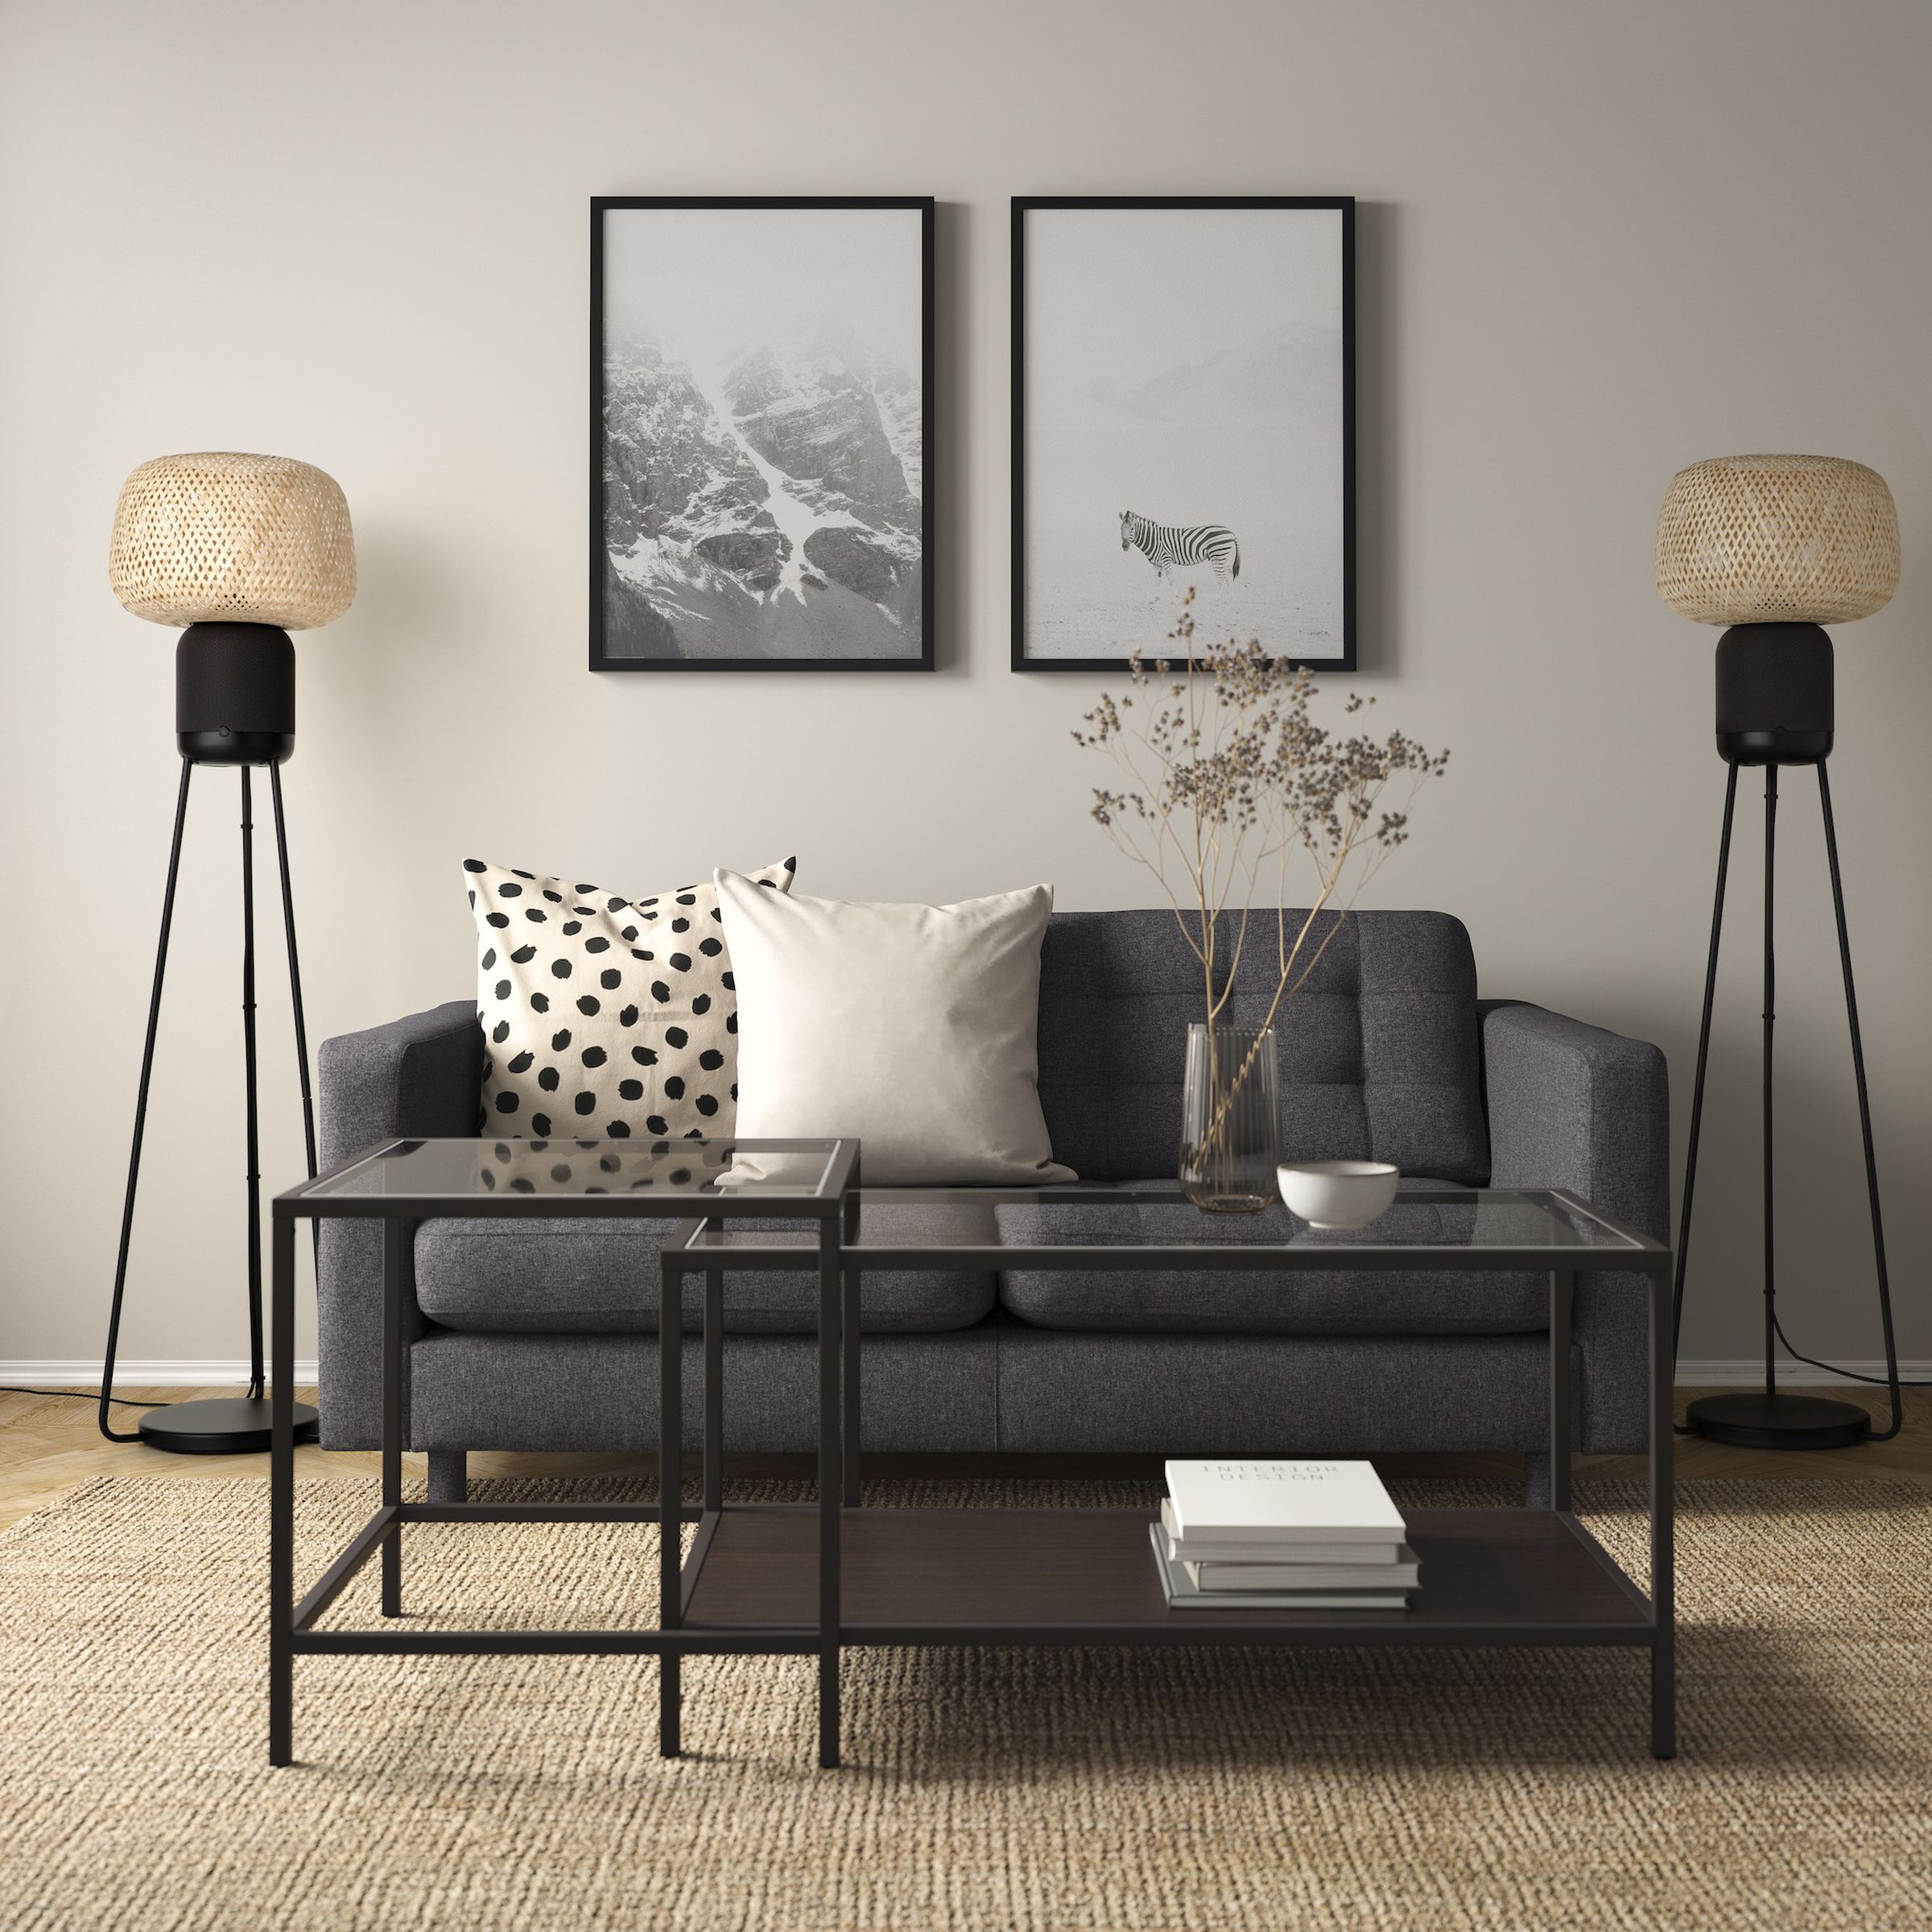 Sonos et Ikea ont créé un haut-parleur de lampadaire qui pourrait être parfait pour le son surround